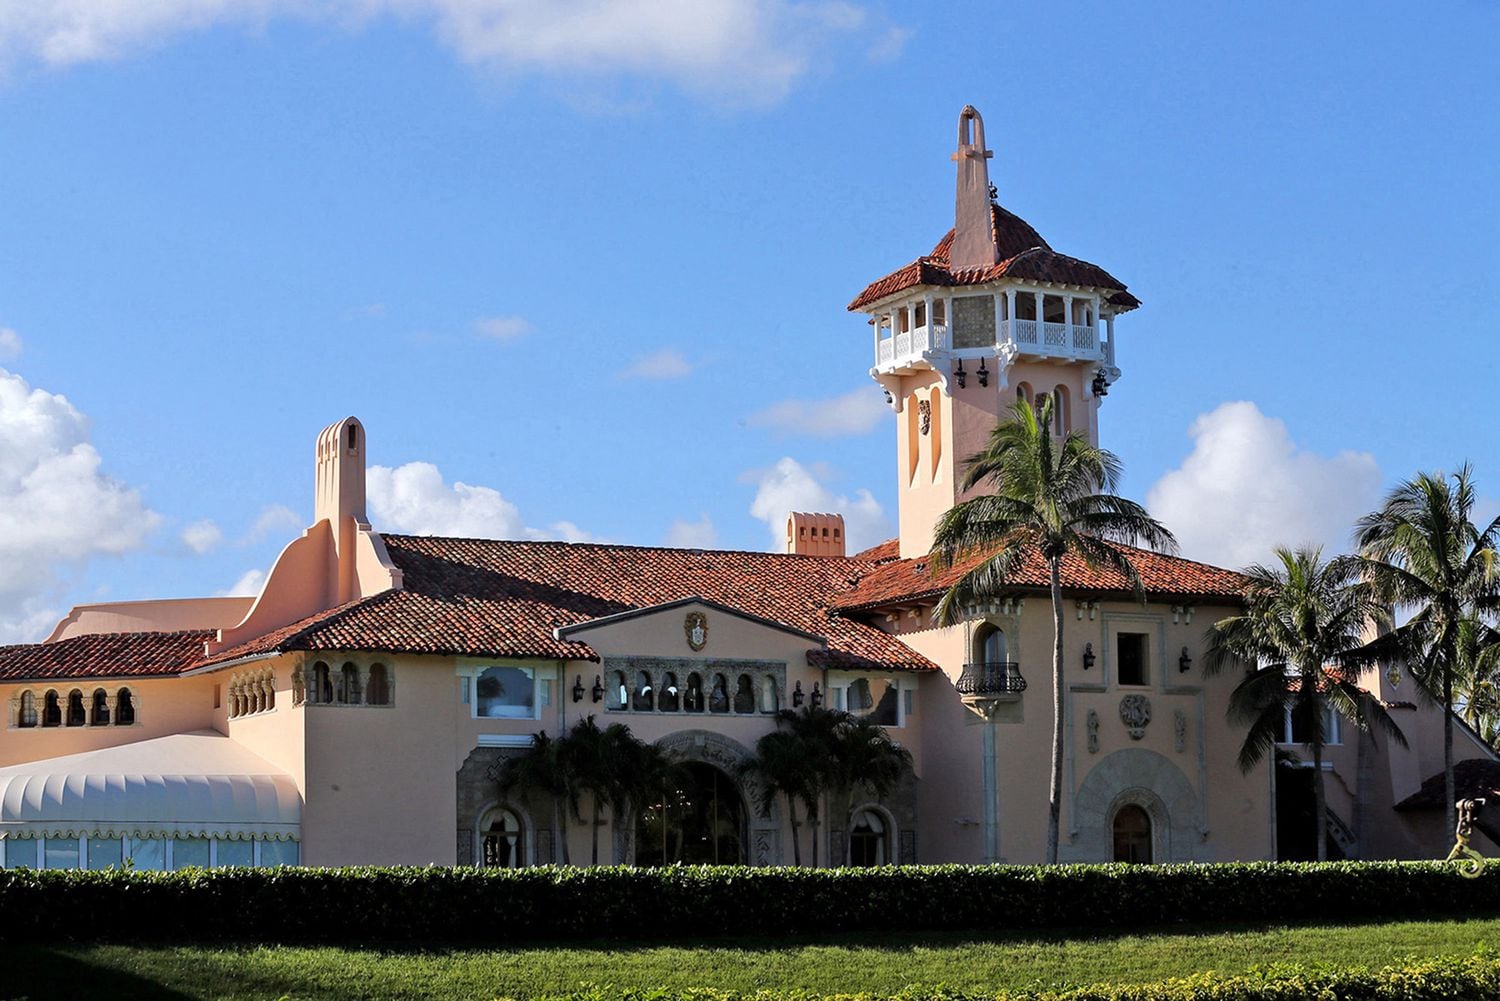 “Donald Trump nunca sale de este lugar ni de su campo de golf. Tampoco sale a cenar a casa de nadie", nos explica Laurence Leamer, residente de Palm Beach, cronista y escritor especializado en política y sociedad estadounidense.